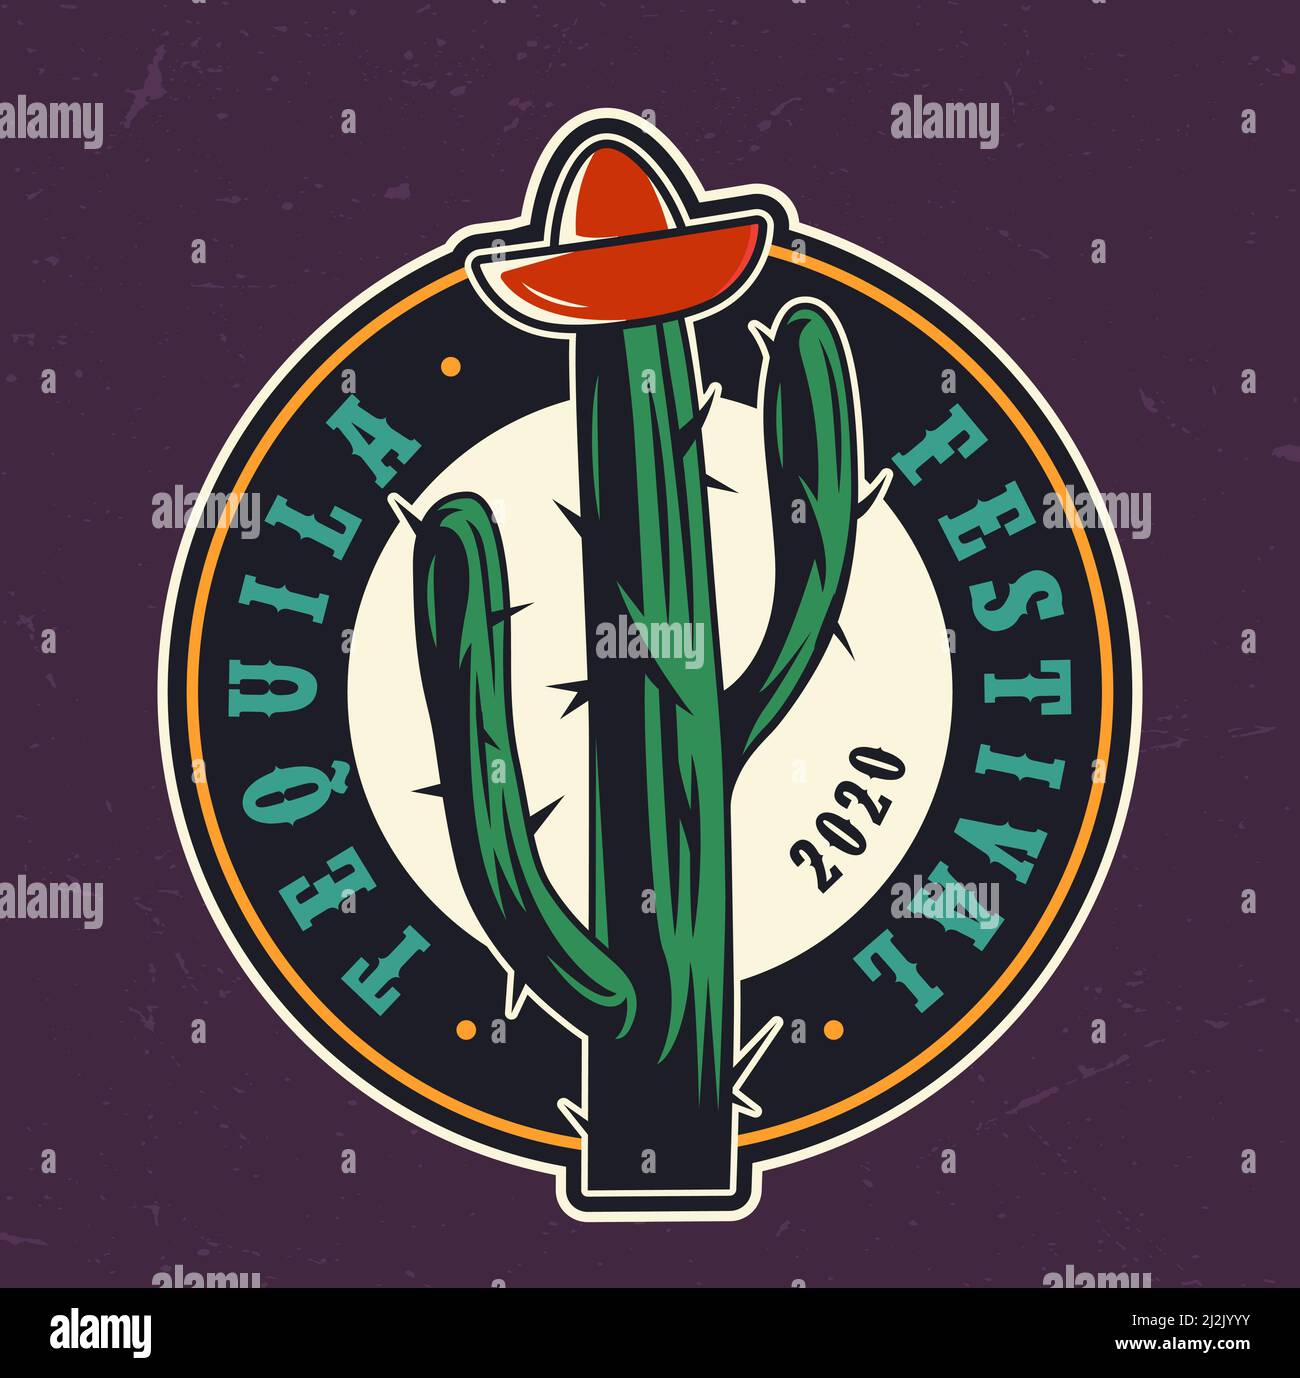 Tequila festival etiqueta redonda de colores con tapa de botella de tequila en forma de sombrero de sombrero en cactus en estilo vintage aislado ilustración vectorial Ilustración del Vector